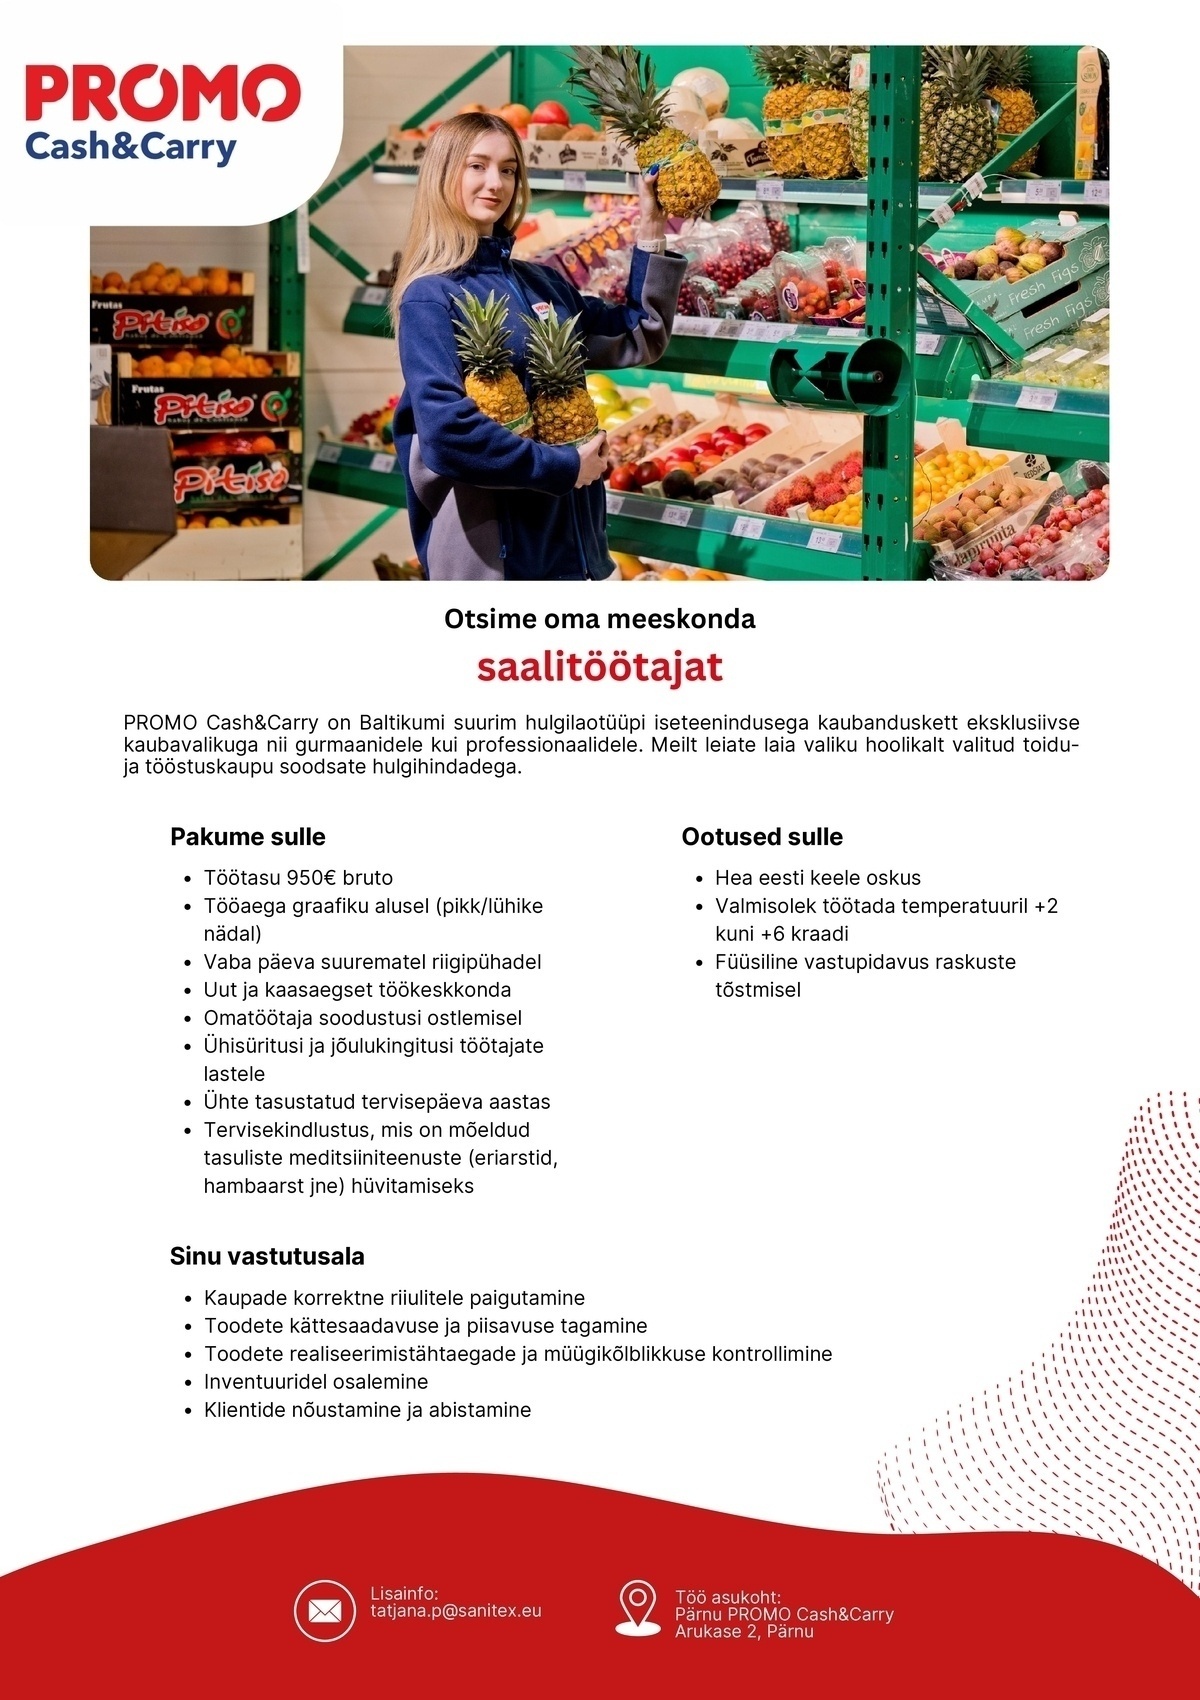 Sanitex OÜ Saalitöötaja termokaupade müügisaalis Pärnu Promo Cash&Carry hulgikaupluses